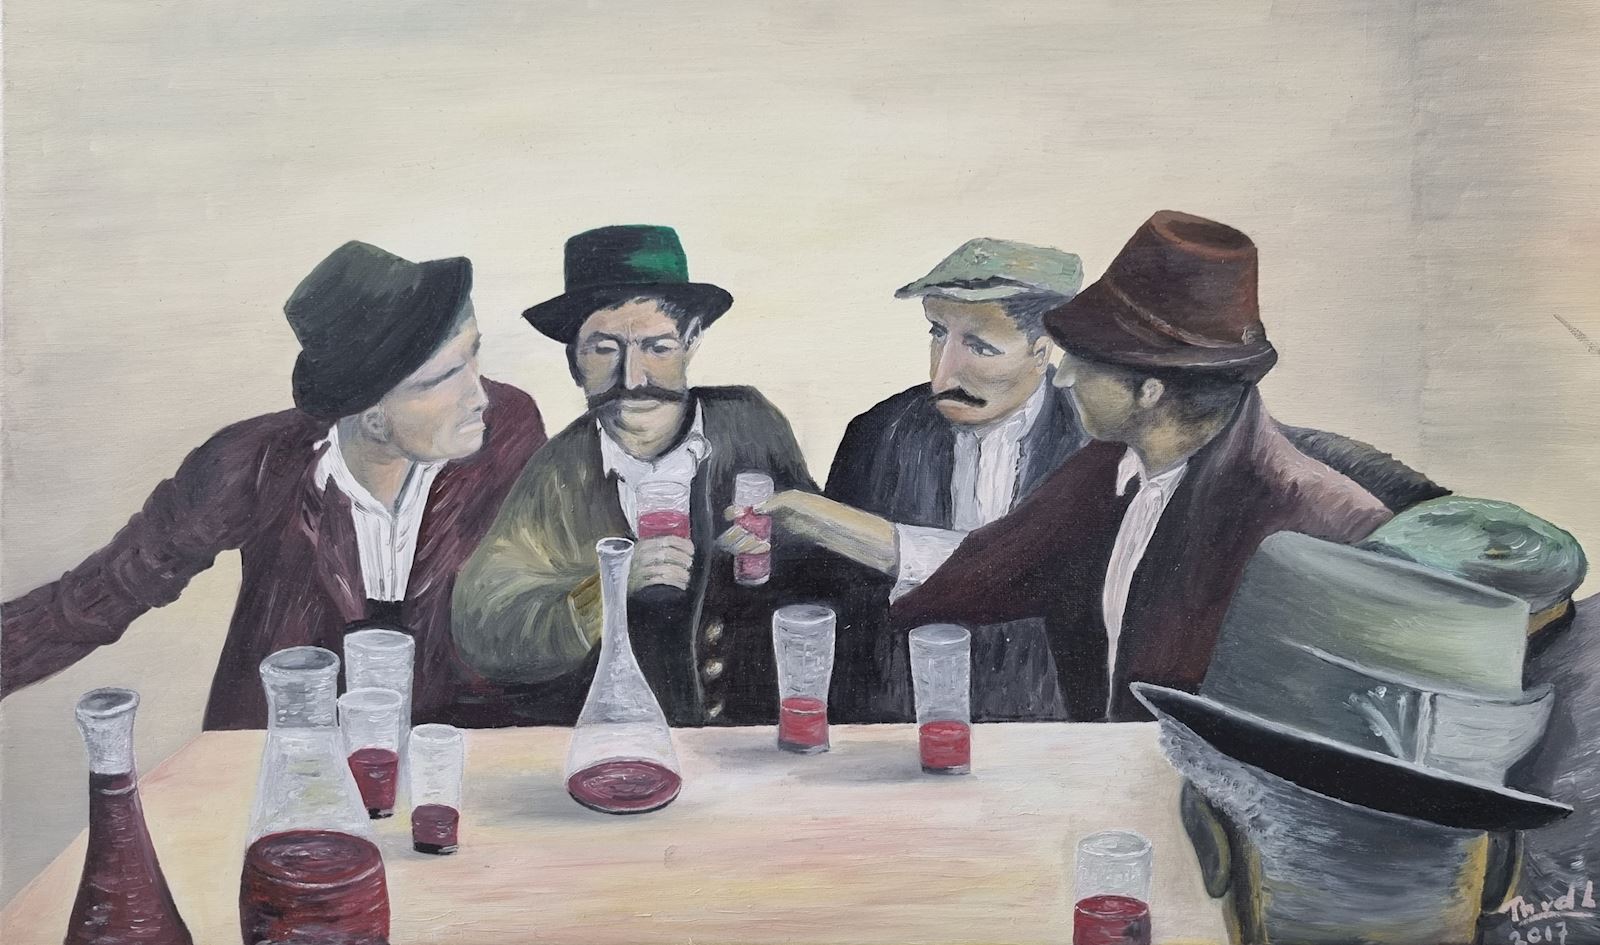 Mannenpraat Theo van der linden borrelen wijn bier bob cafe kroeg schilderij kunst uit de kast